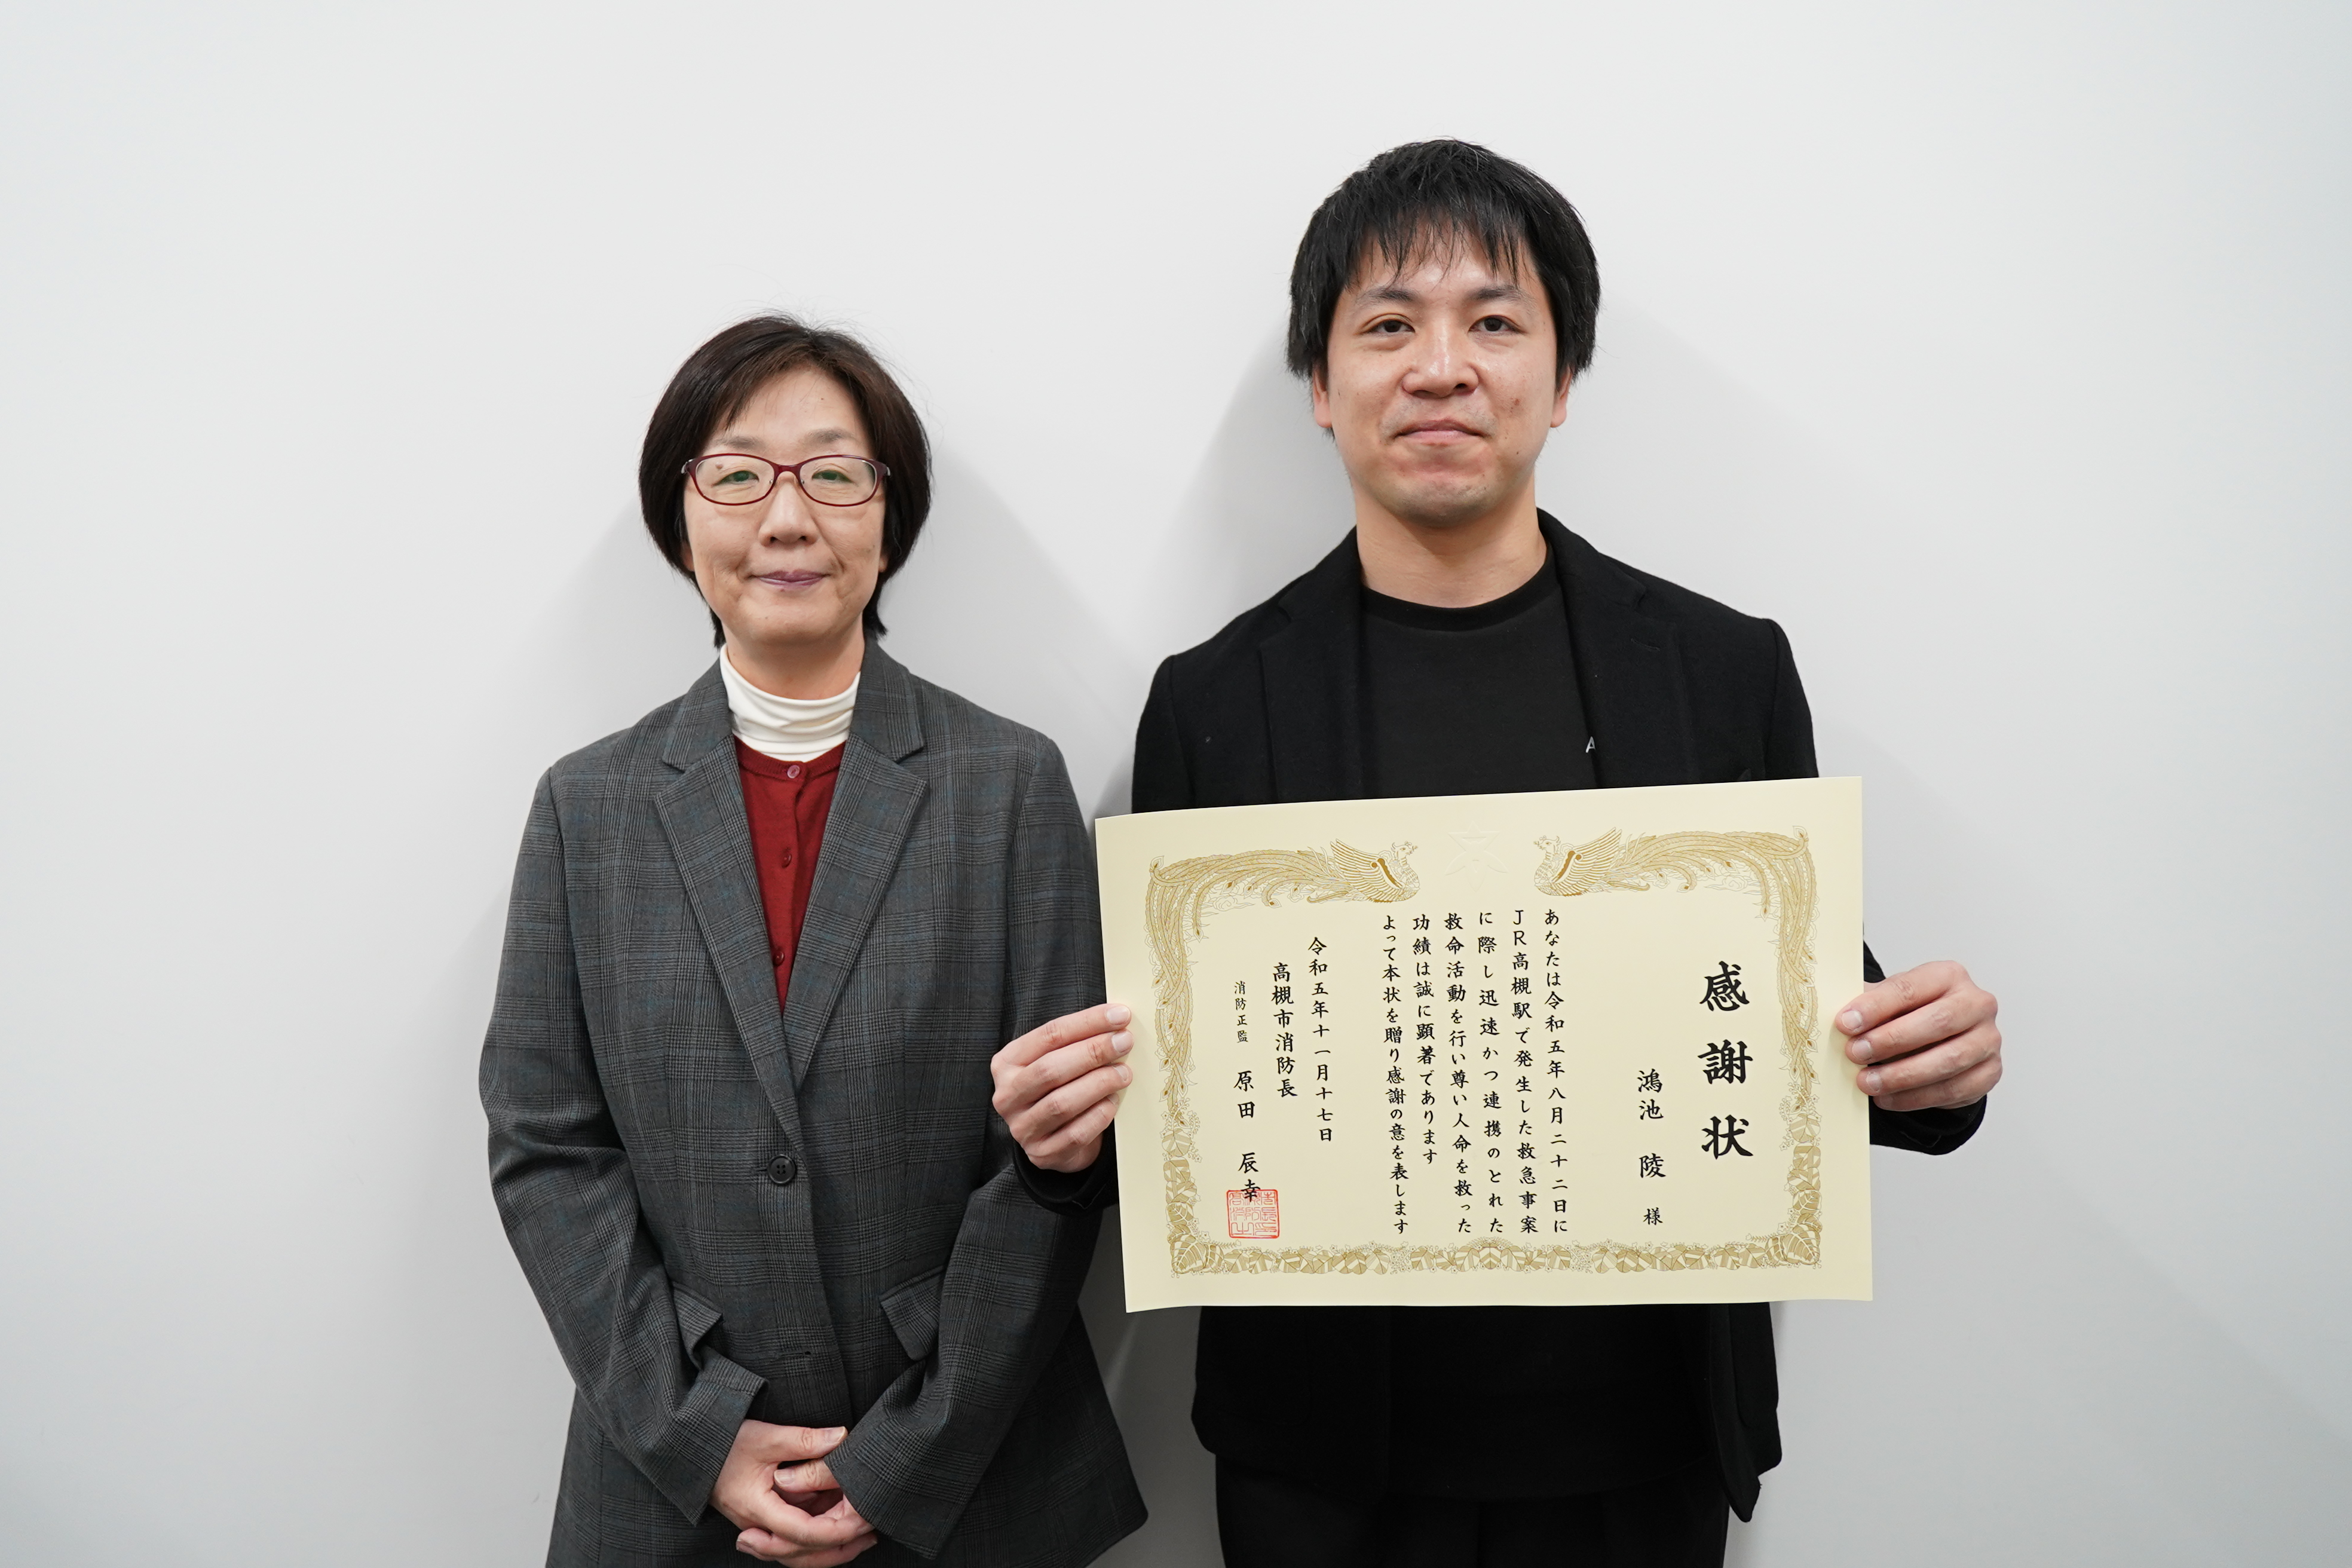 鴻池さん（右）と担当教員の升田寿賀子教授（左）